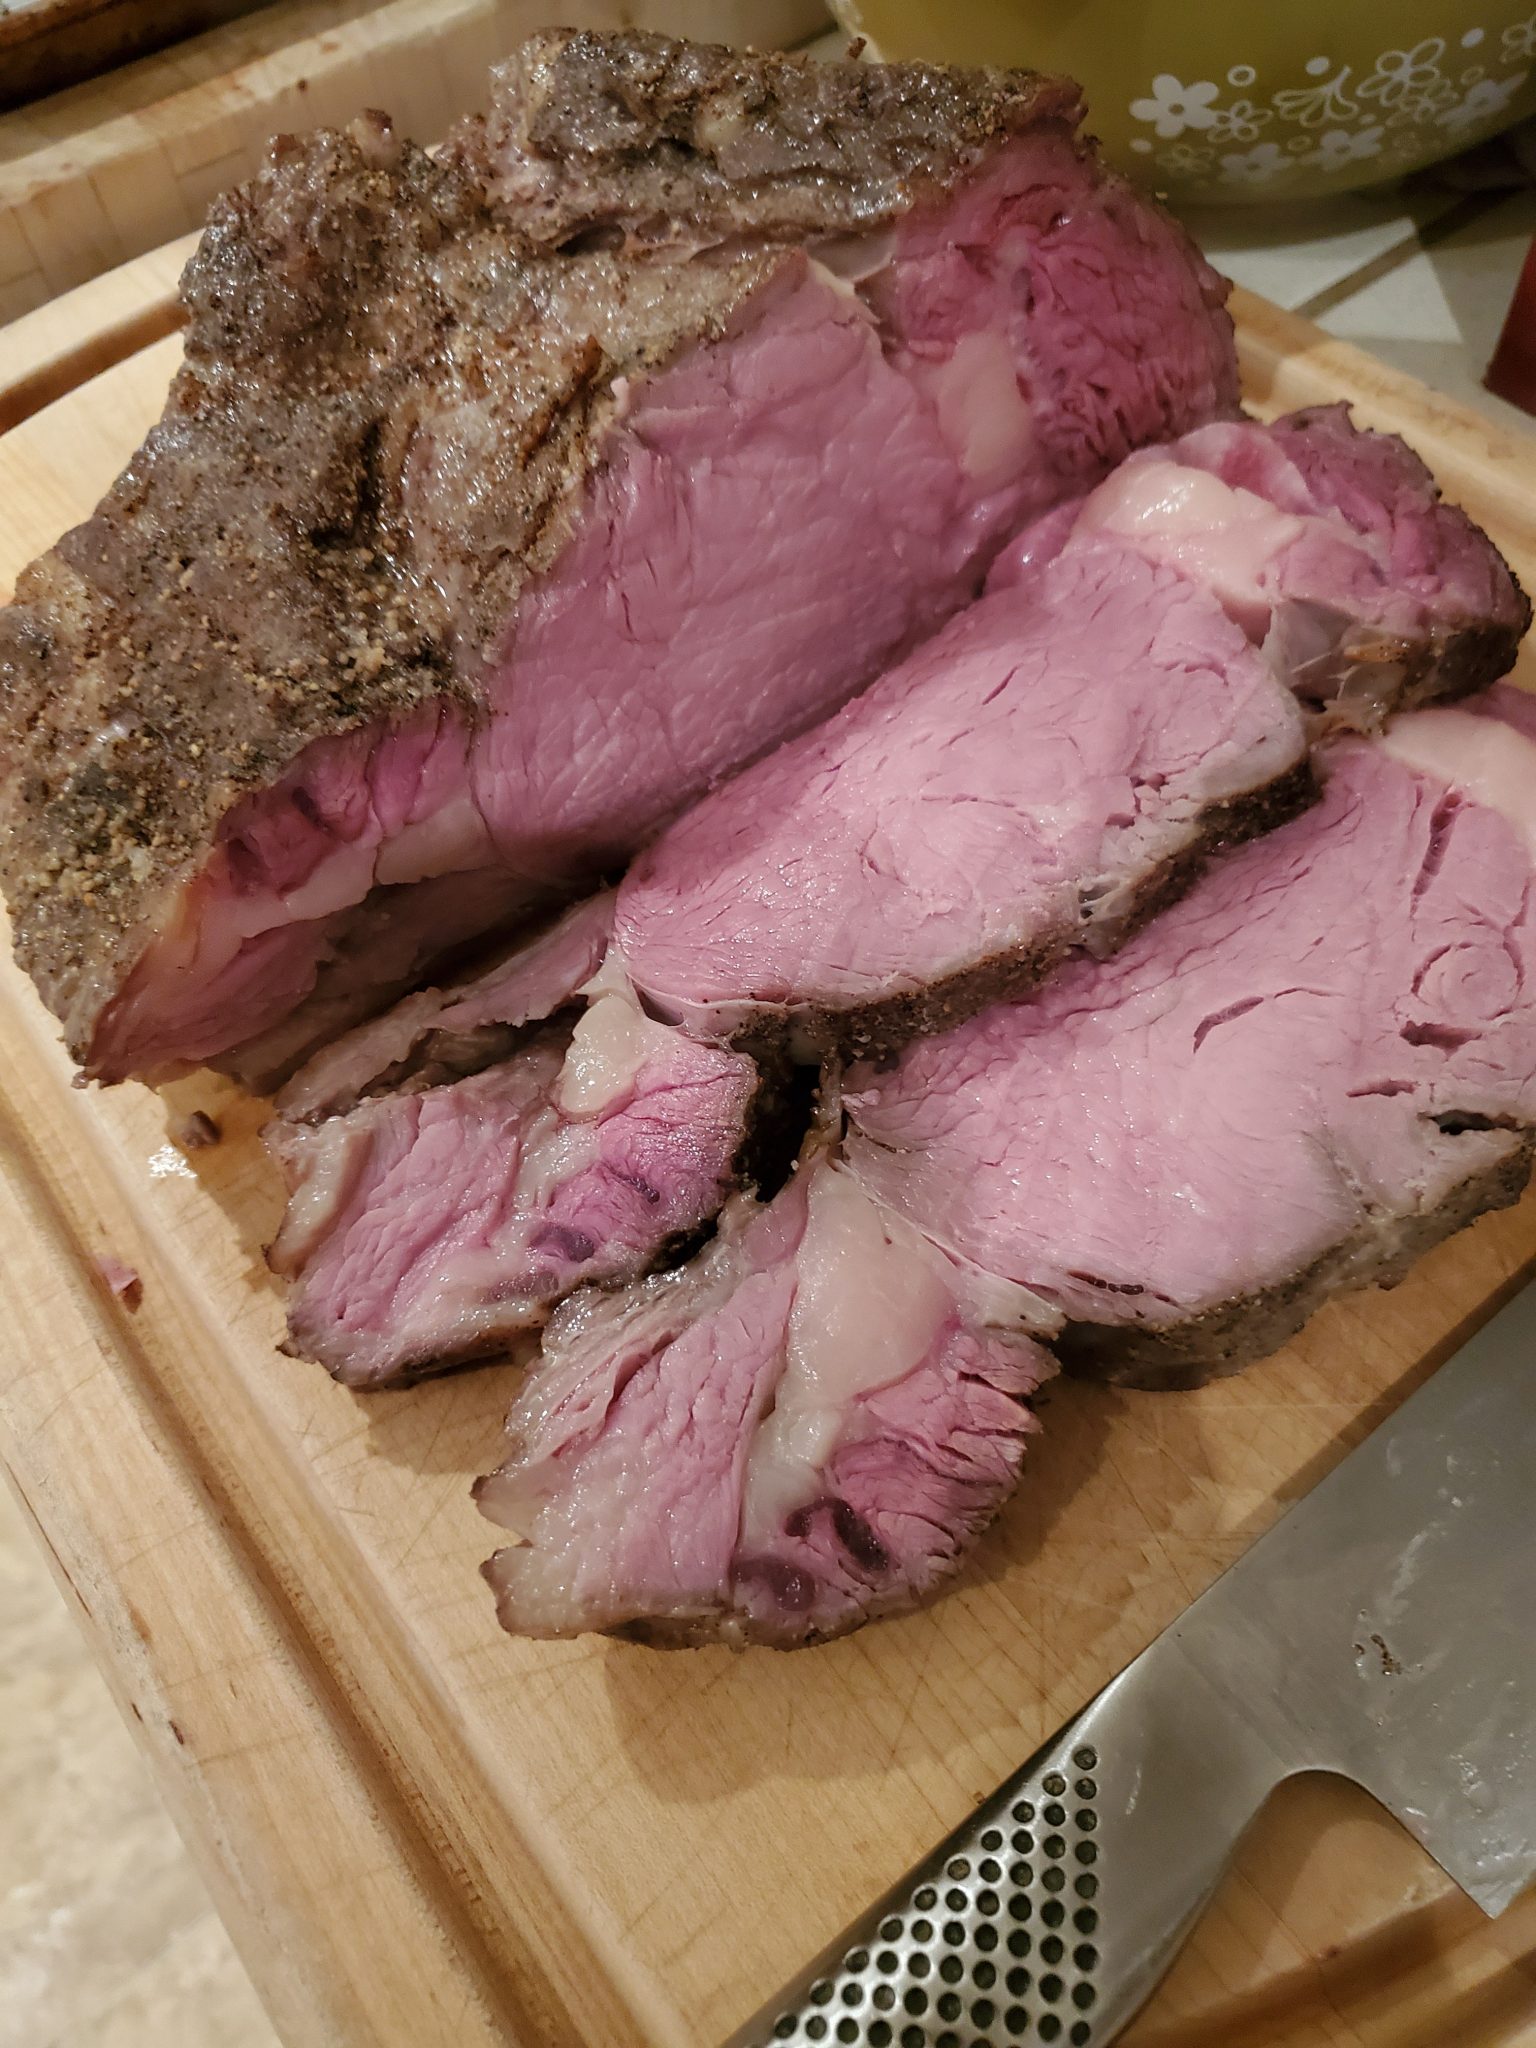 Prime rib roast